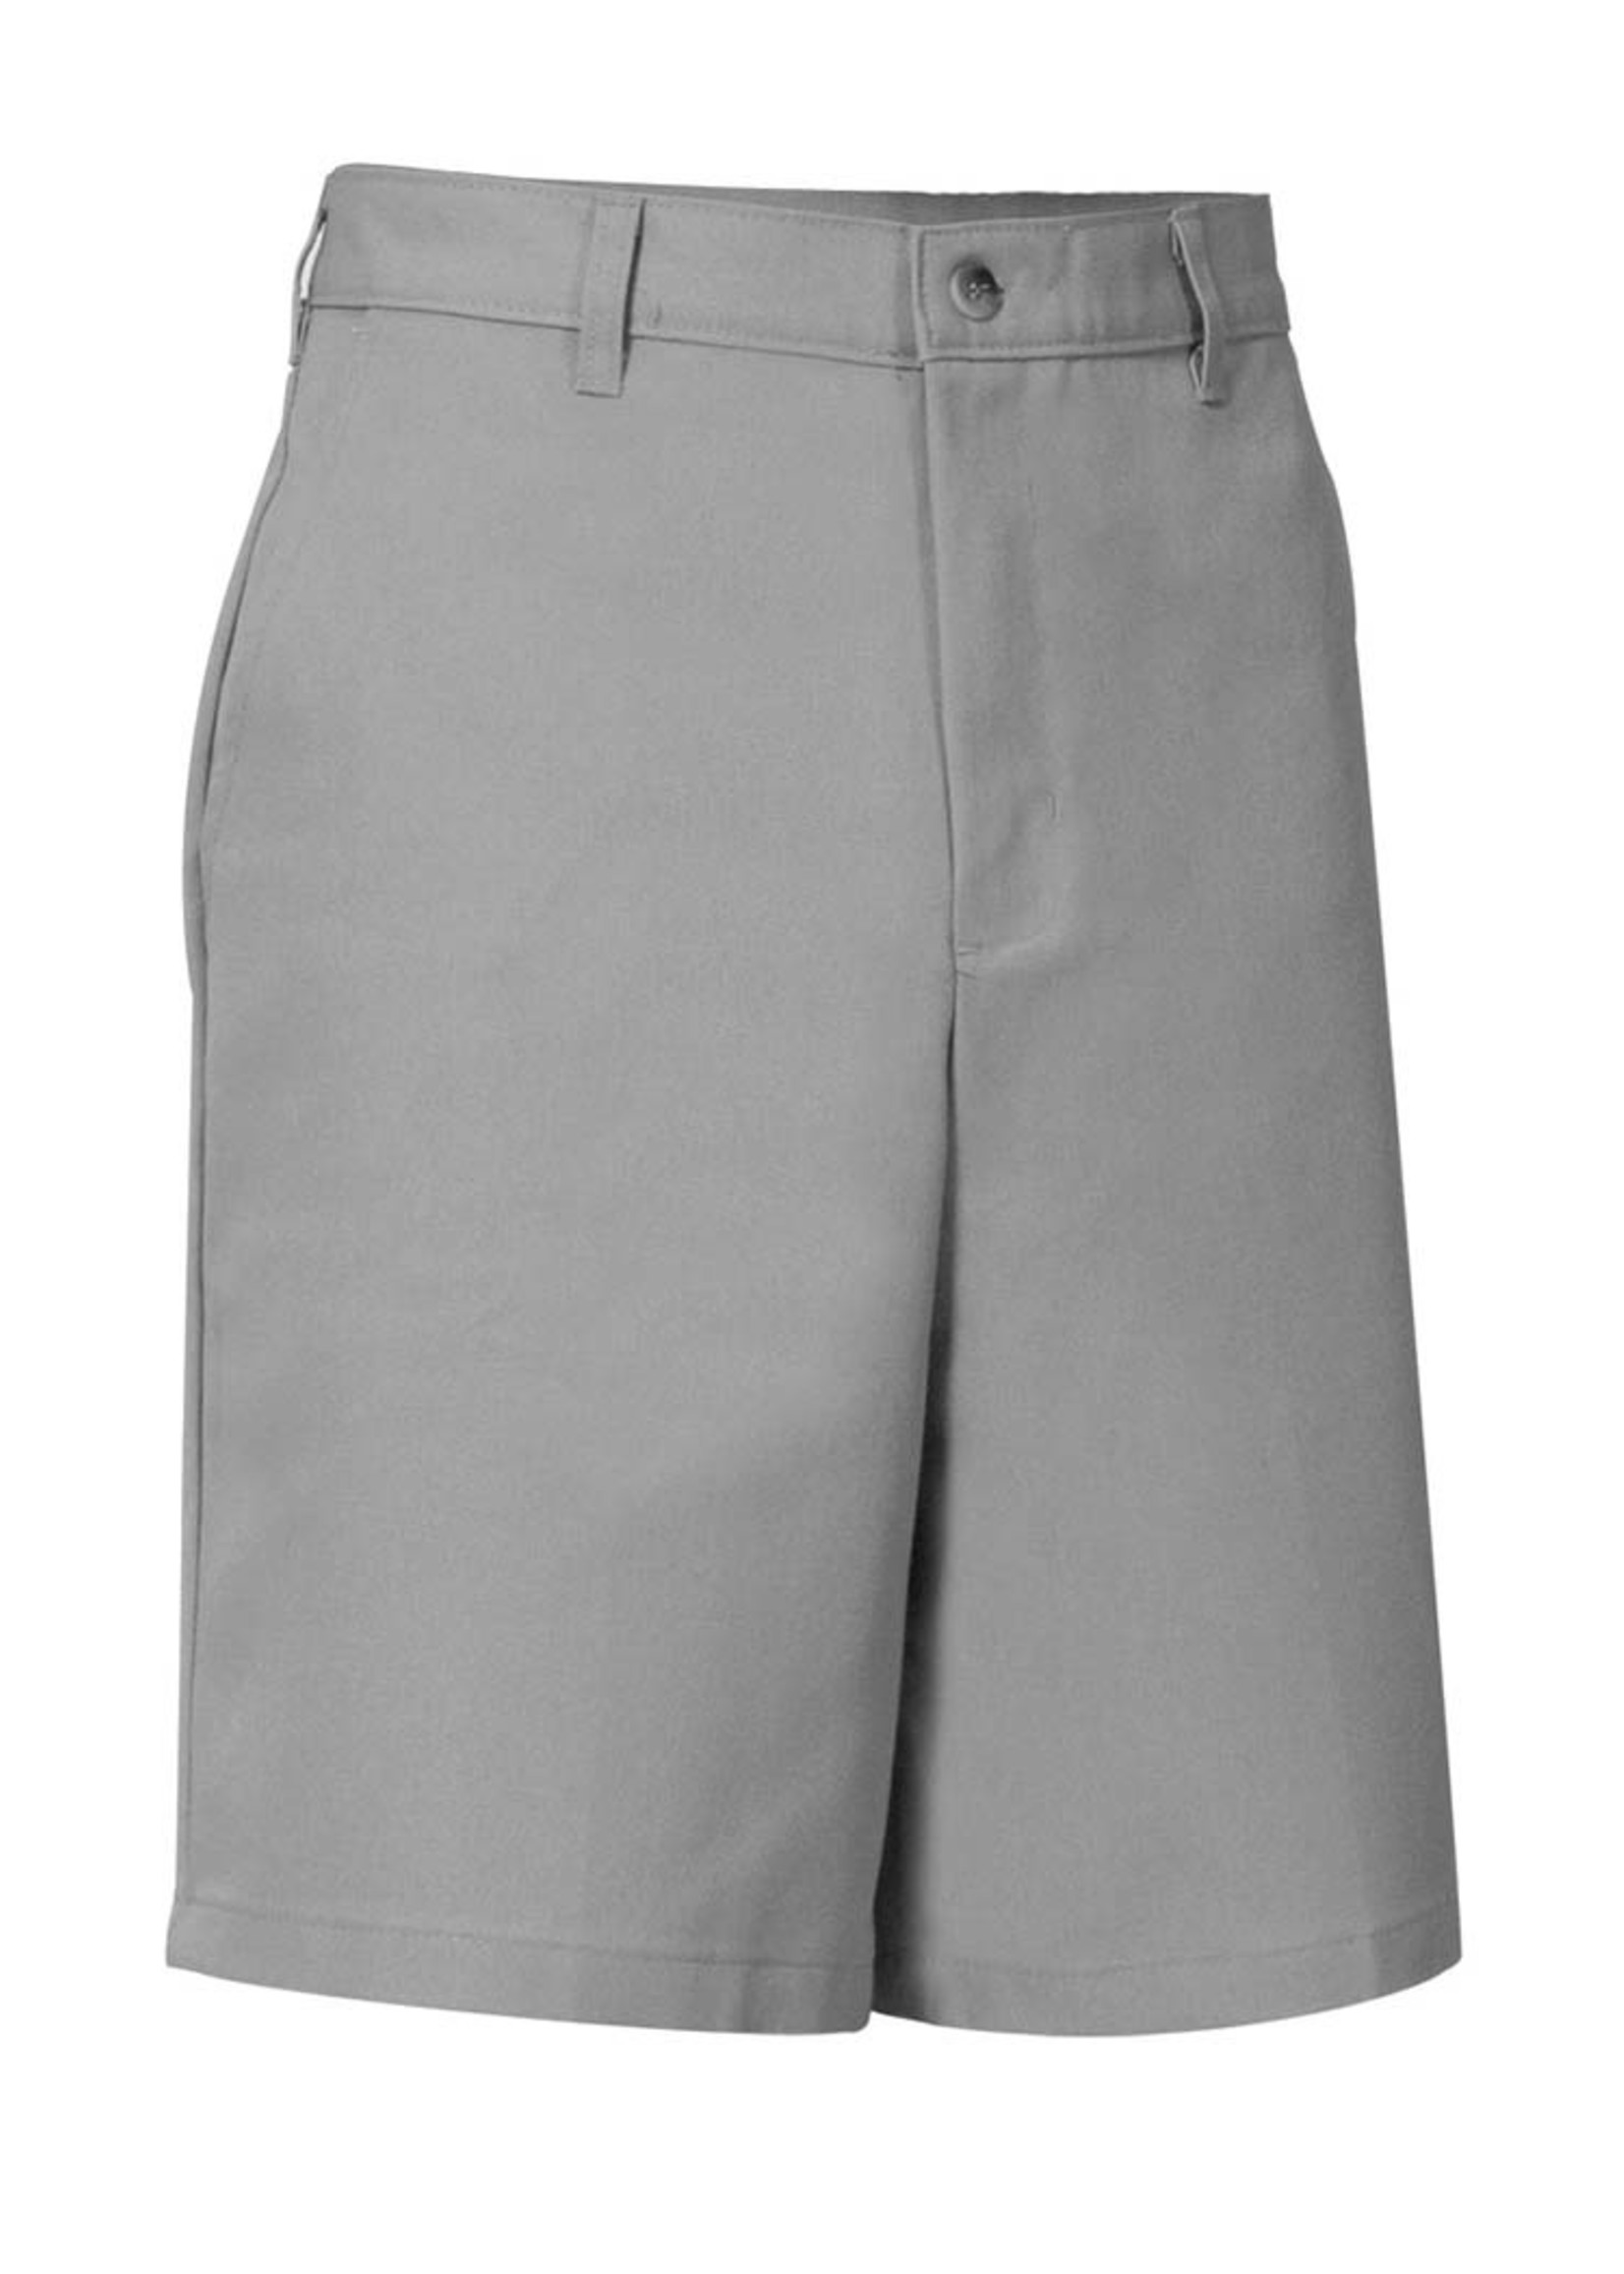 A+ Mens Grey Flat Front Shorts